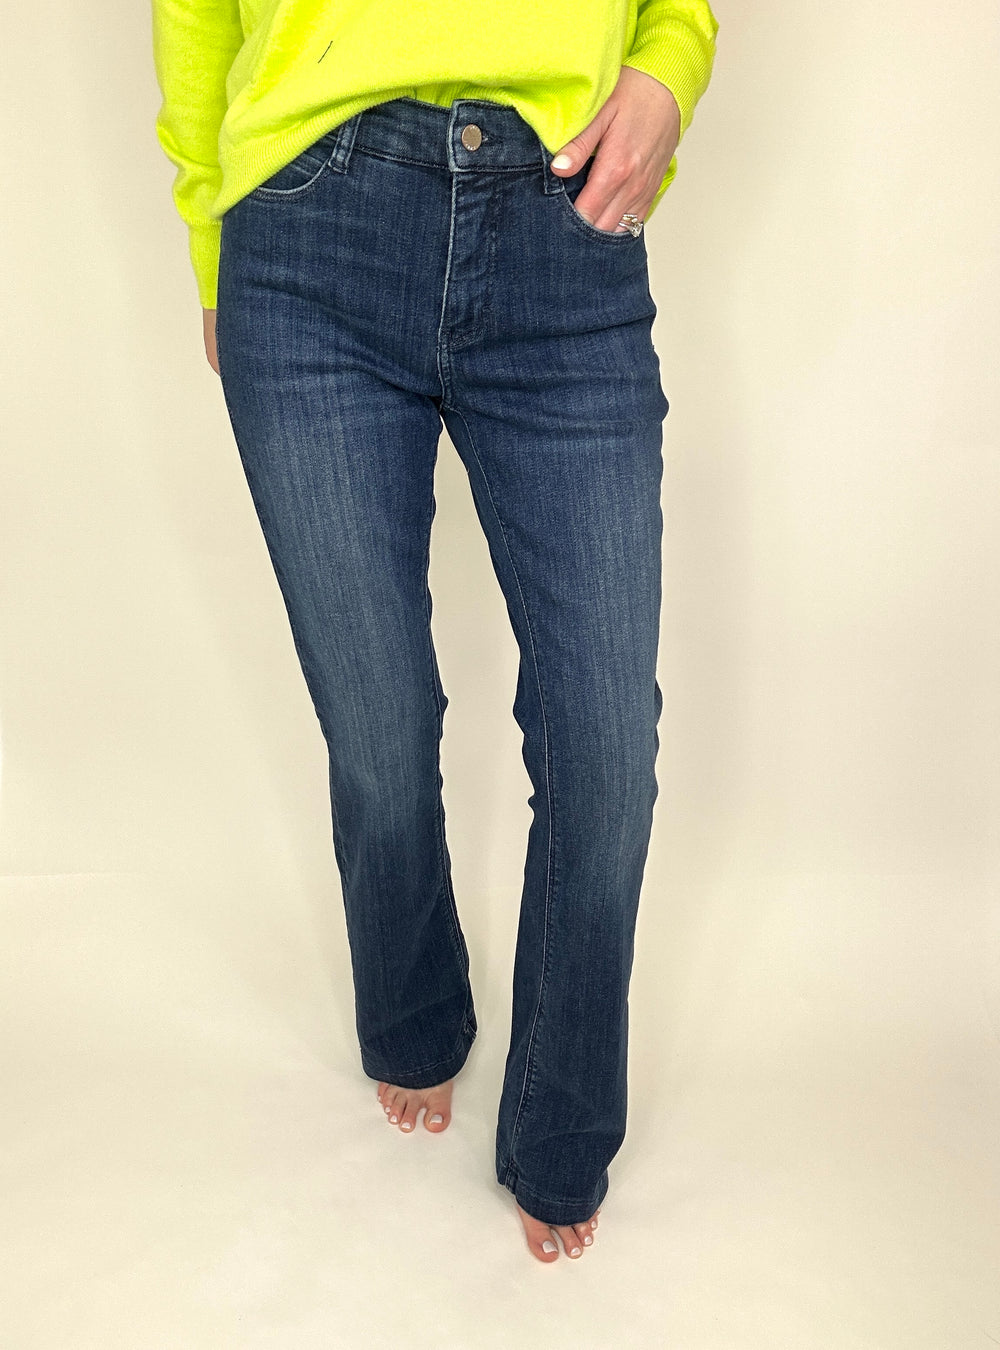 MAC High waist jean with bootleg cut. 